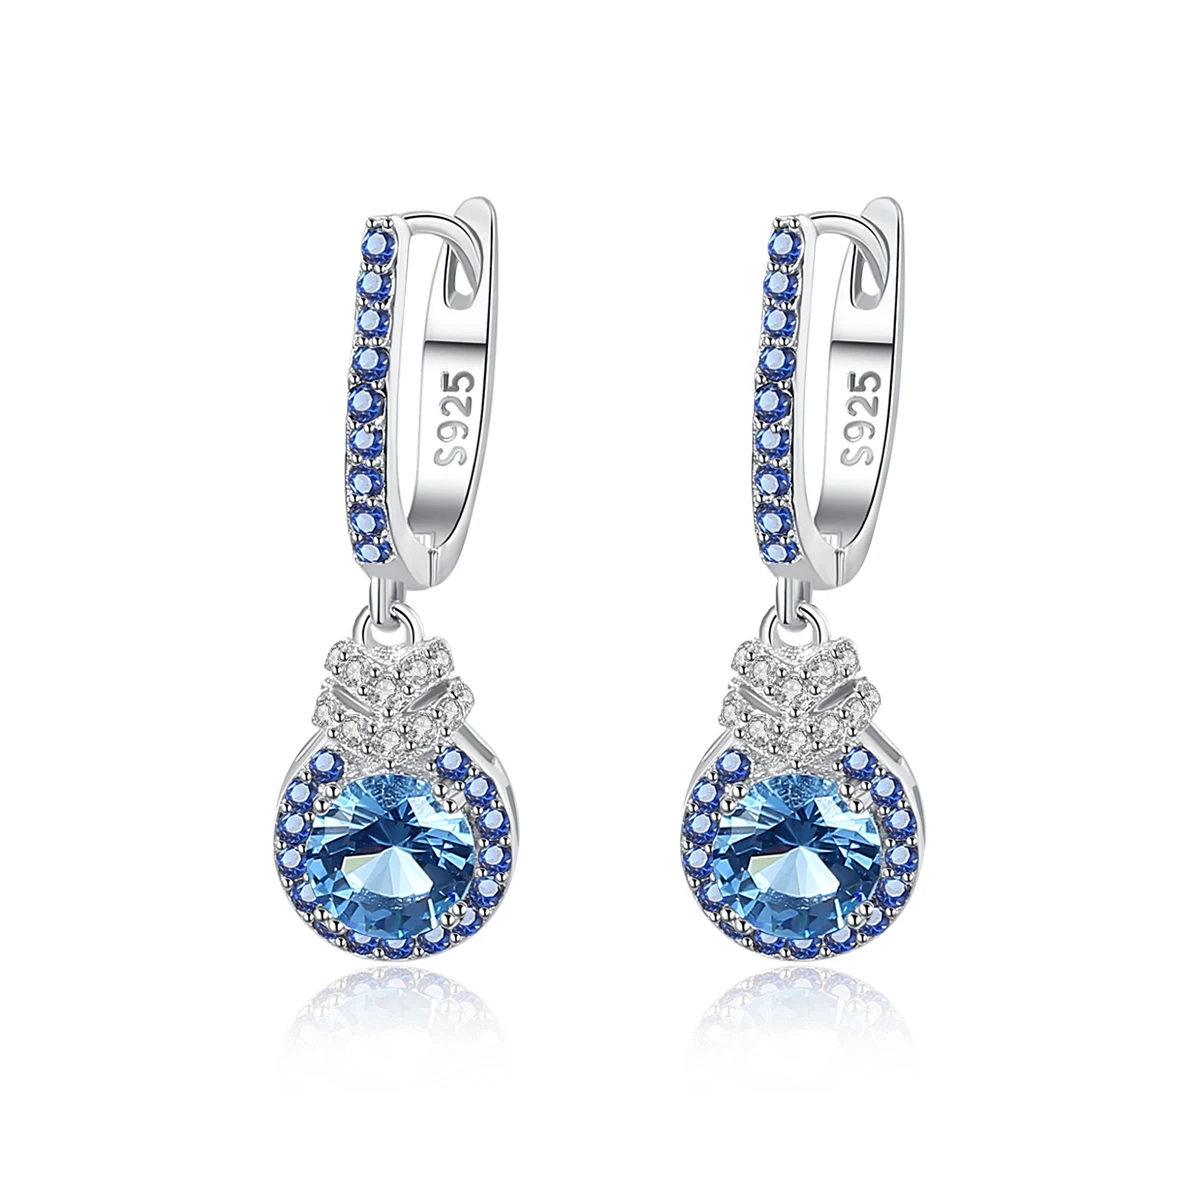 

CZCITY Luxury 925 Sterling Silver Drop Earrings Huggie Diamonds CZ Dangle Hooop Earrings for Women Silver Jewelry